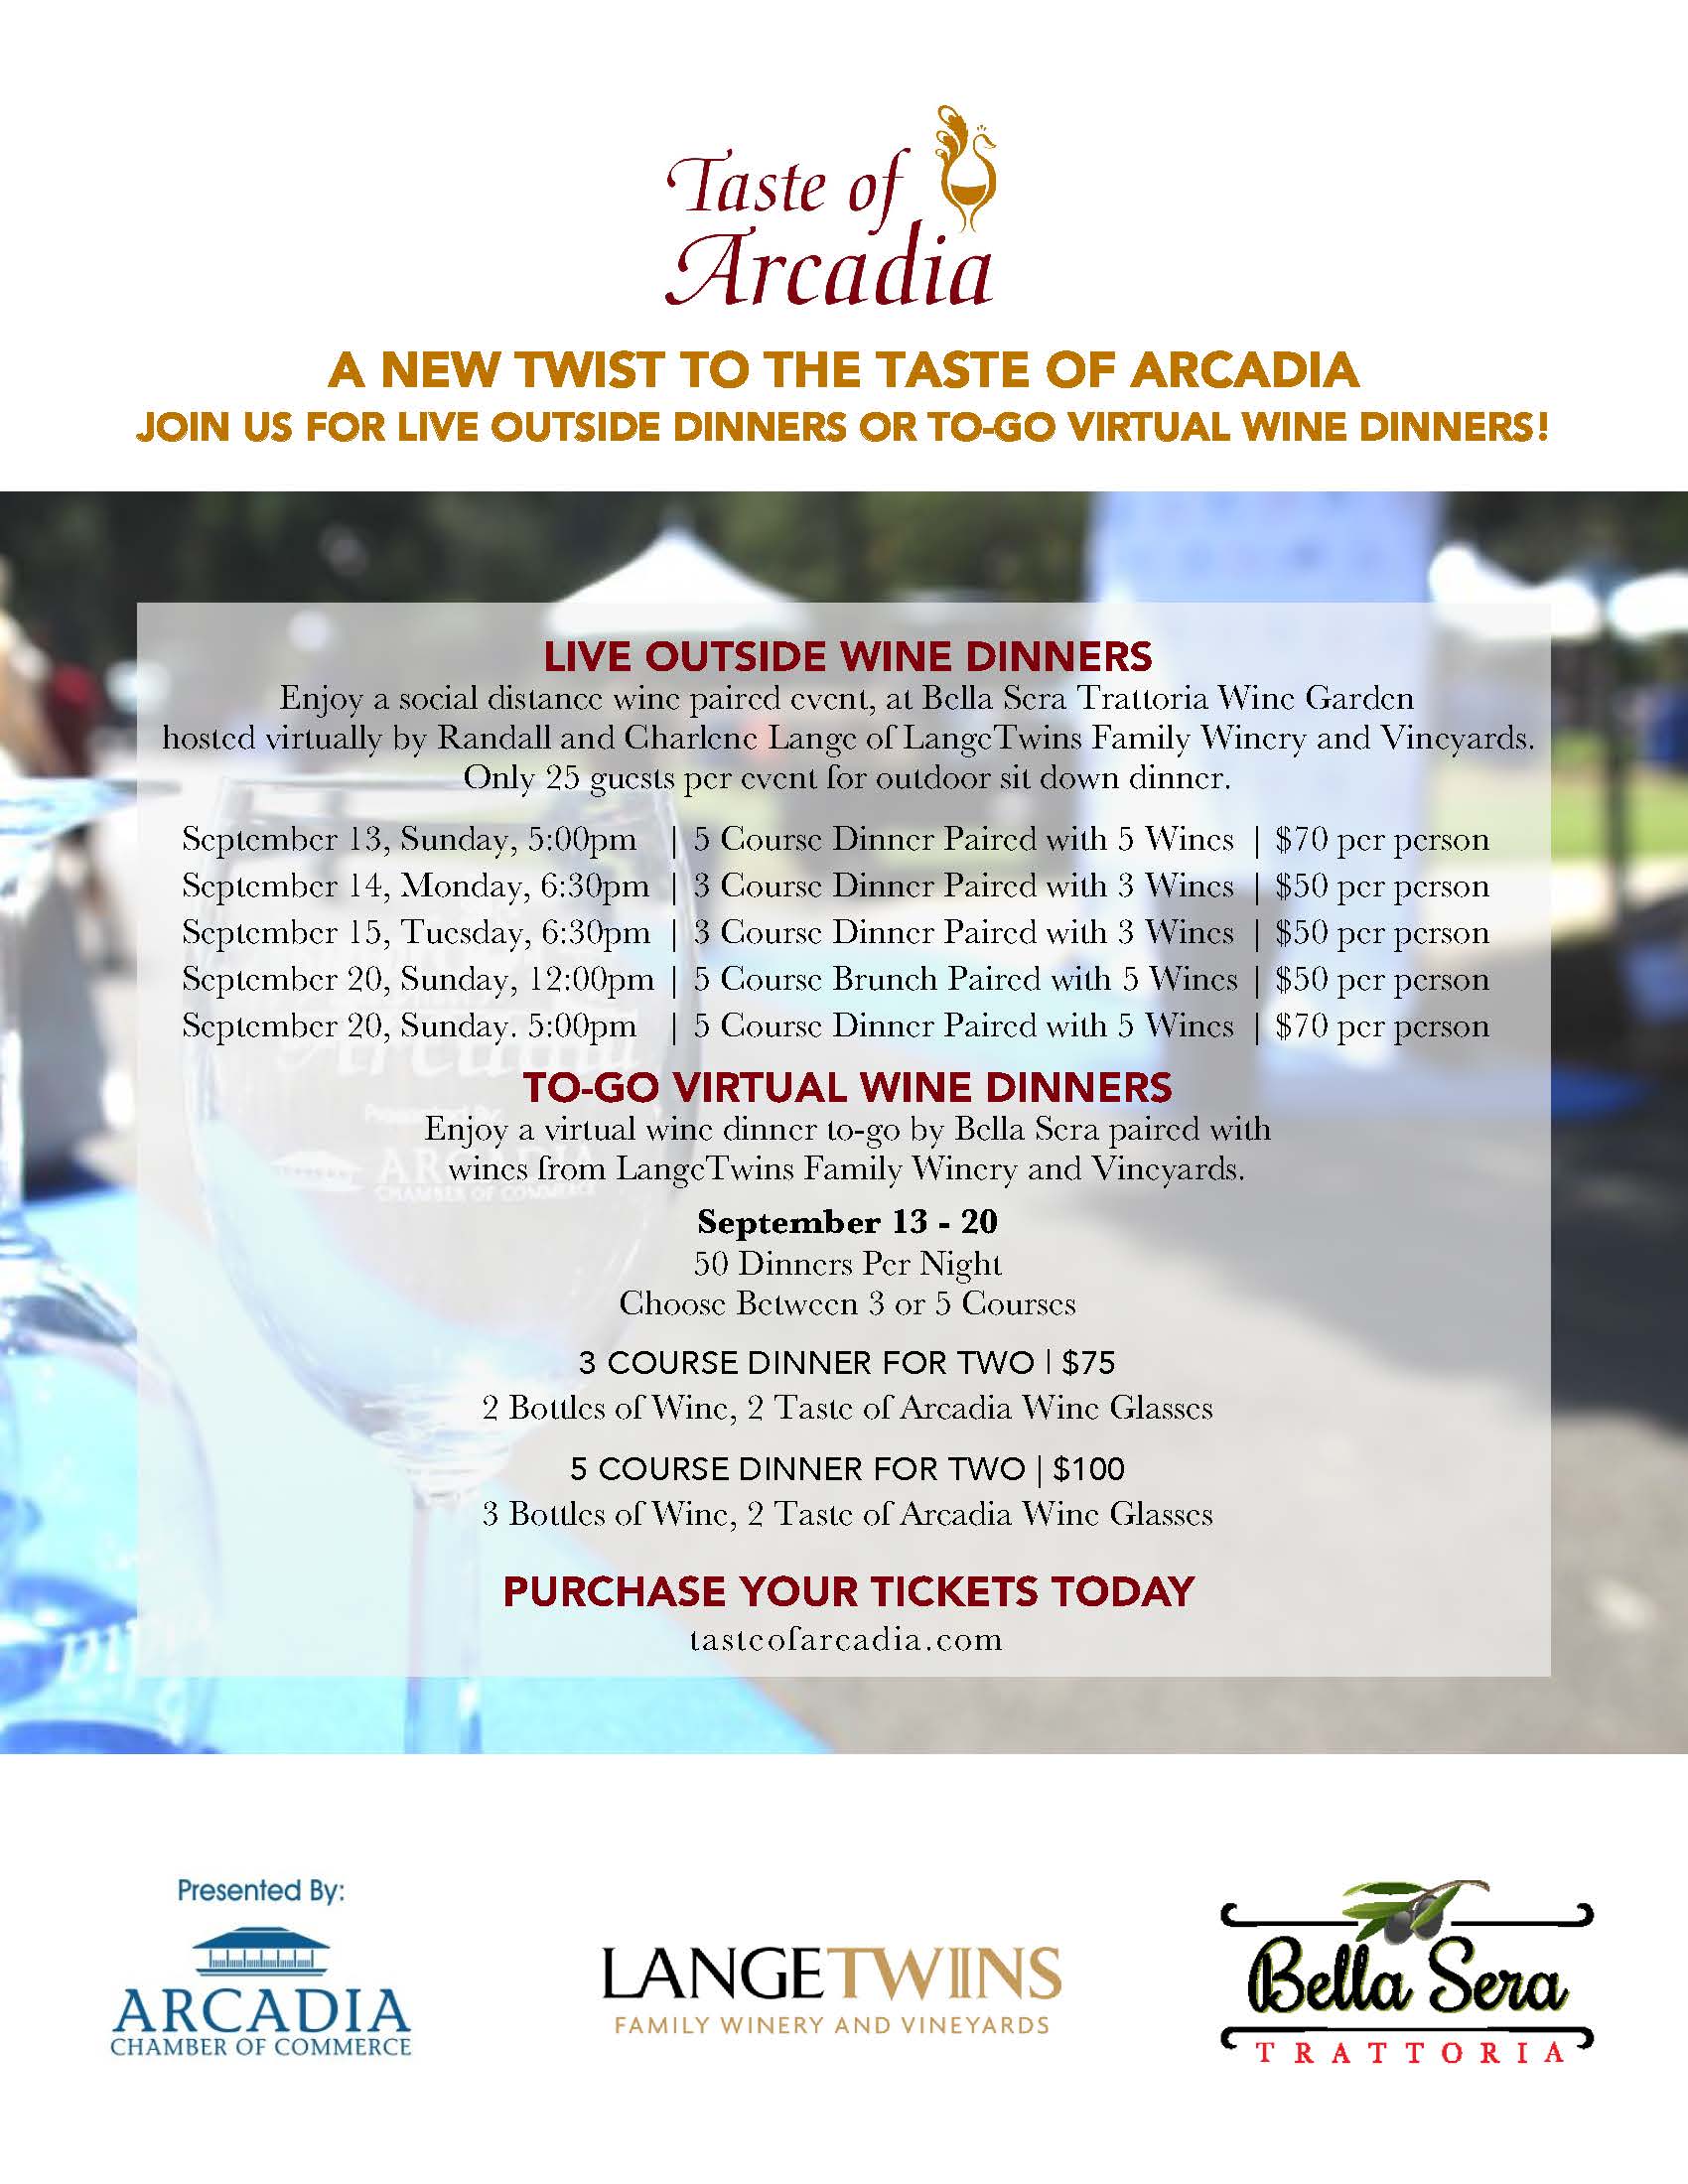 Taste of Arcadia wine tasting flyer 